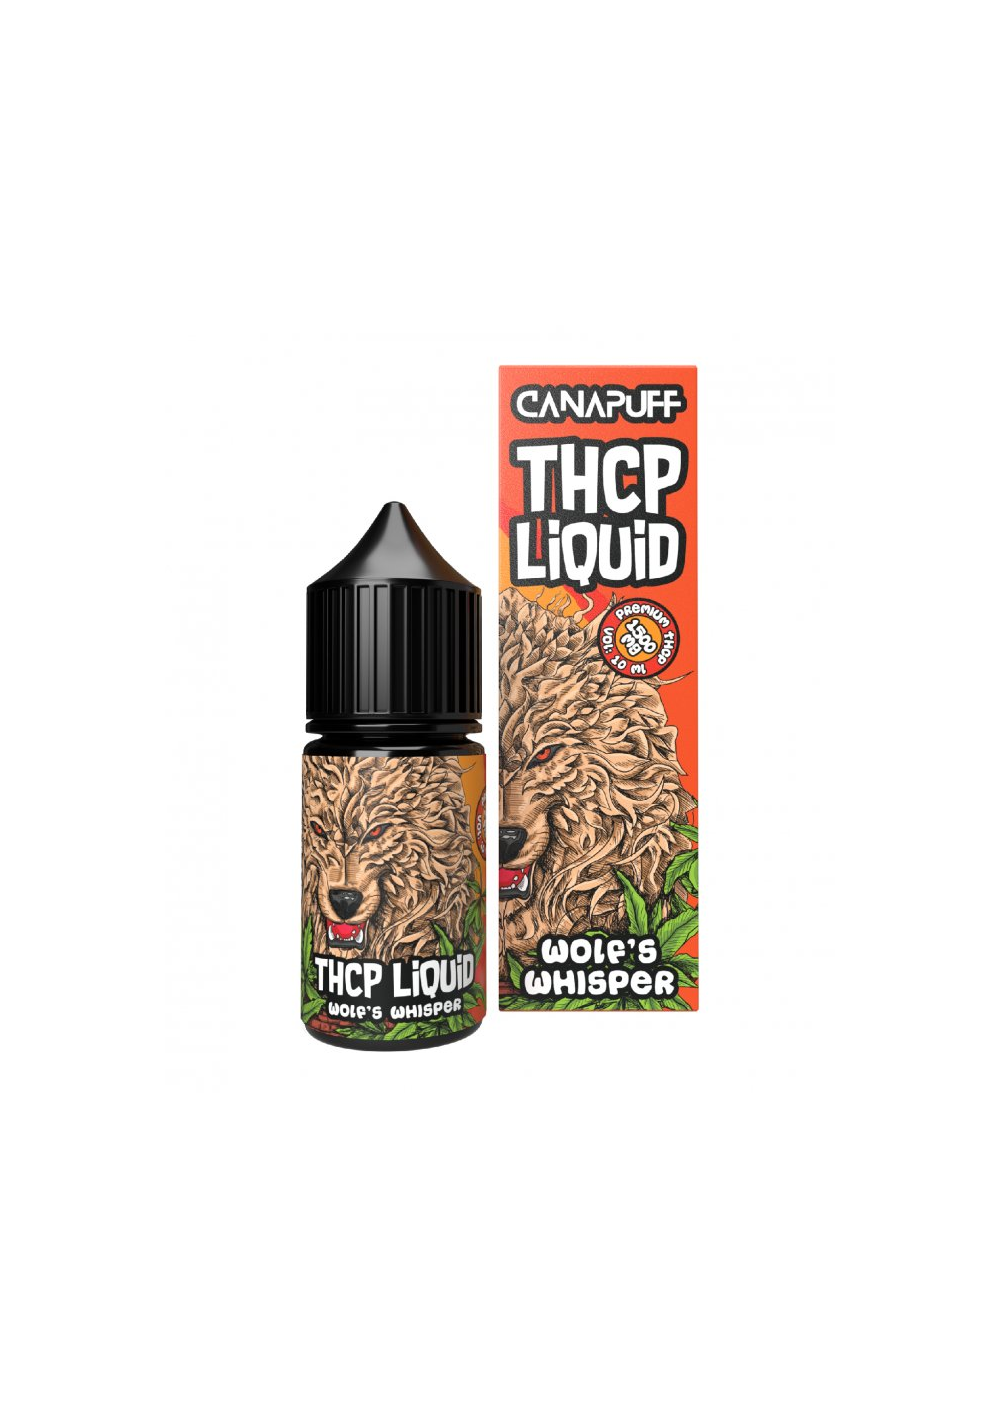 THC-P E-Liquid 79% - Wolf's Whisper, 10ml - 1500mg THCp - Canapuff